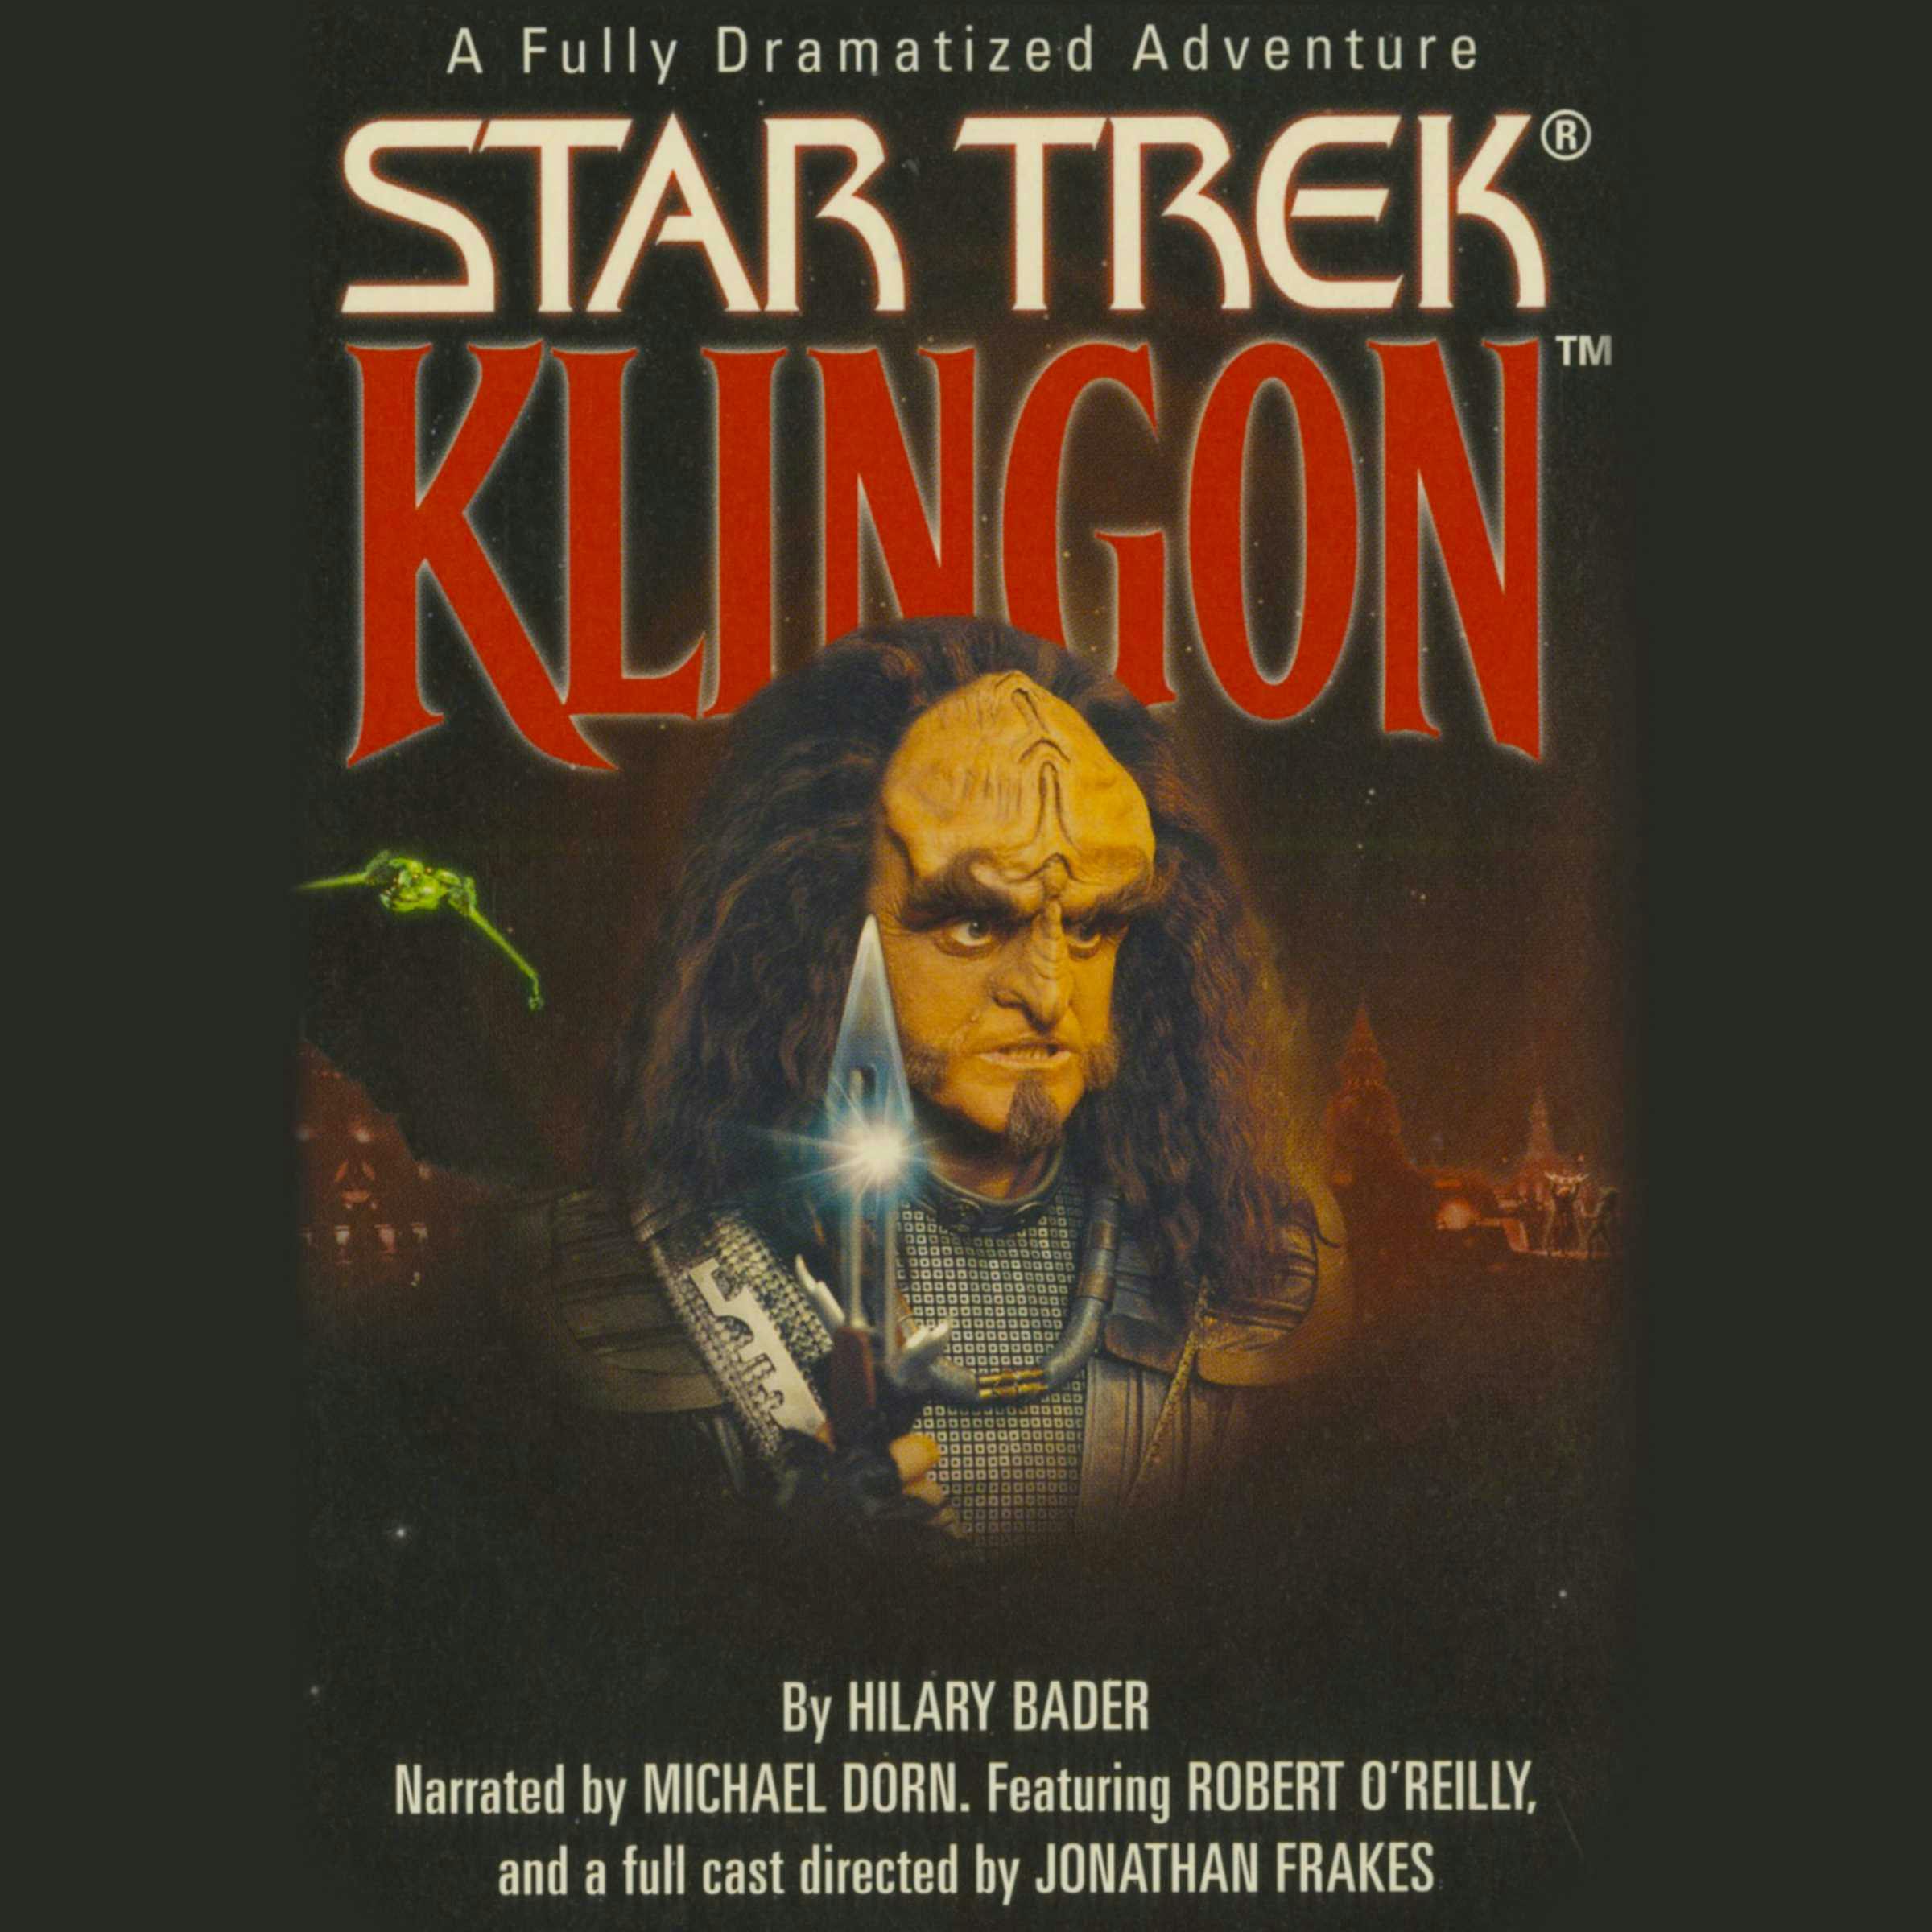 Star Trek: Klingon - undefined